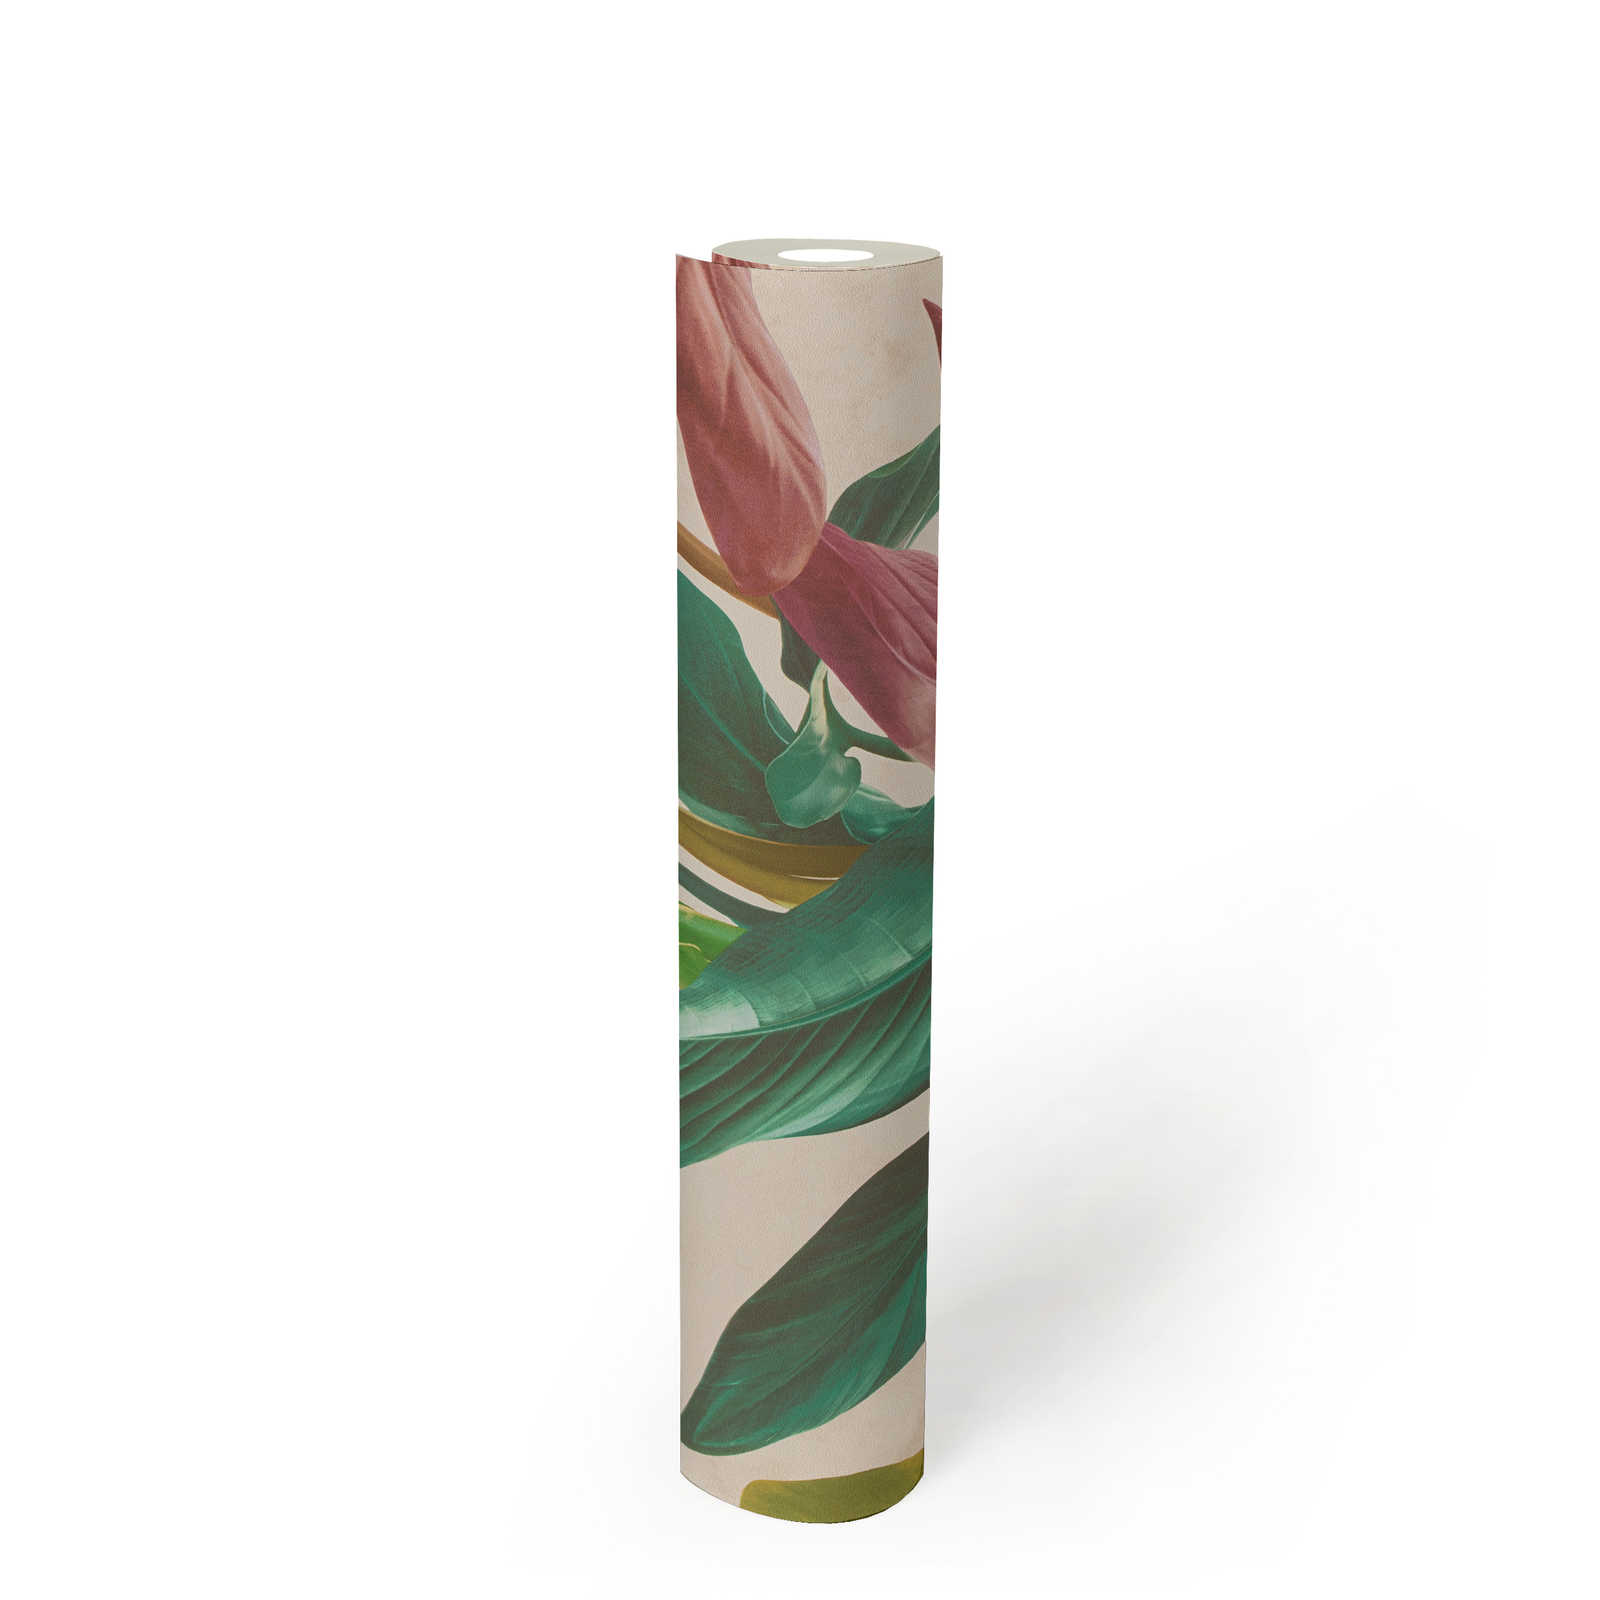             Papier peint à motif de feuilles aux couleurs vives - multicolore, crème, vert
        